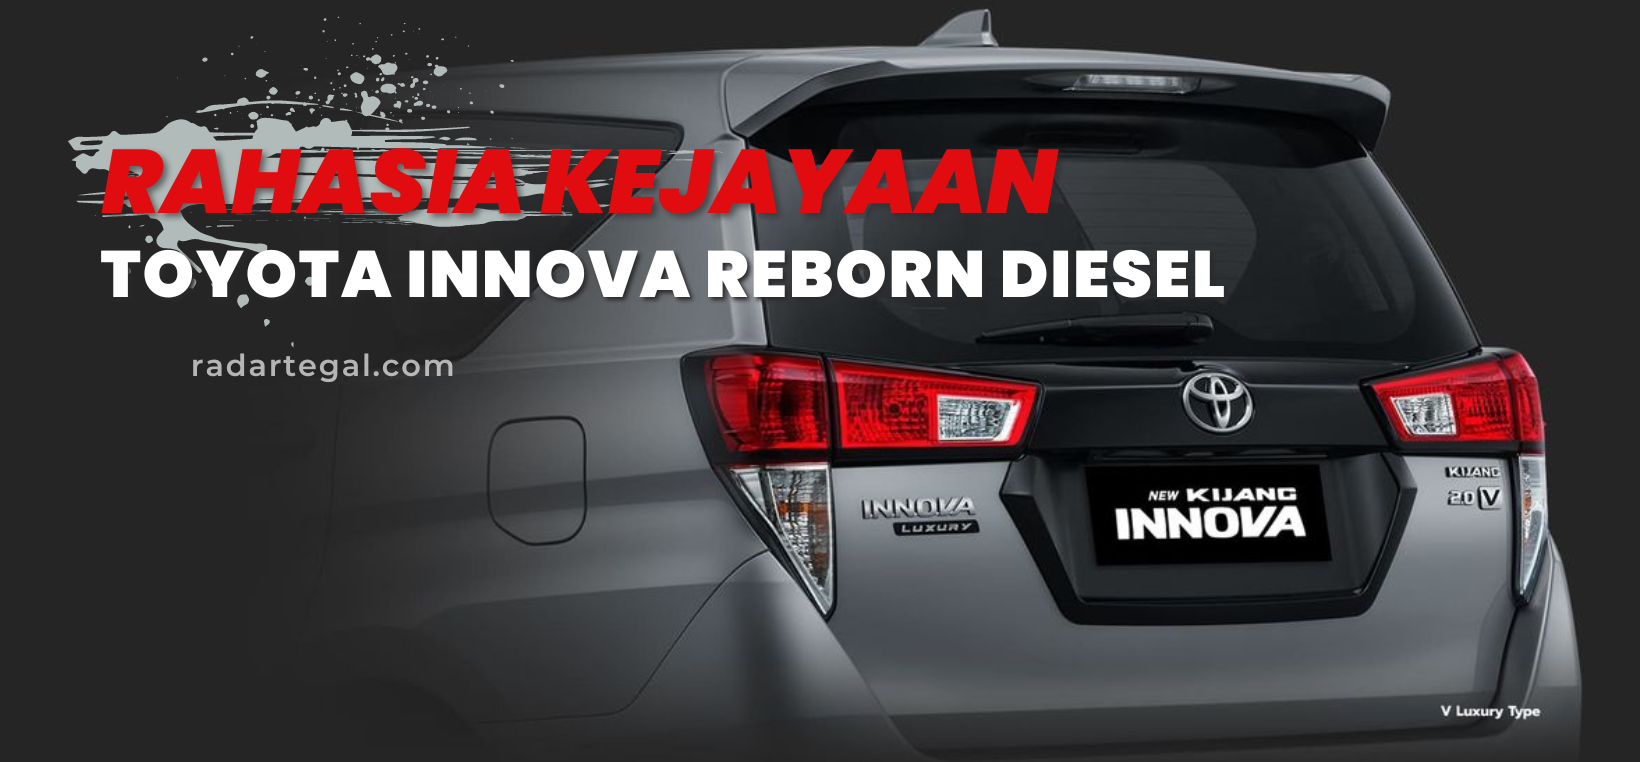 Pilihan Ideal untuk Keluarga, Ini Rahasia Kejayaan Toyota Innova Reborn Diesel Terbaru